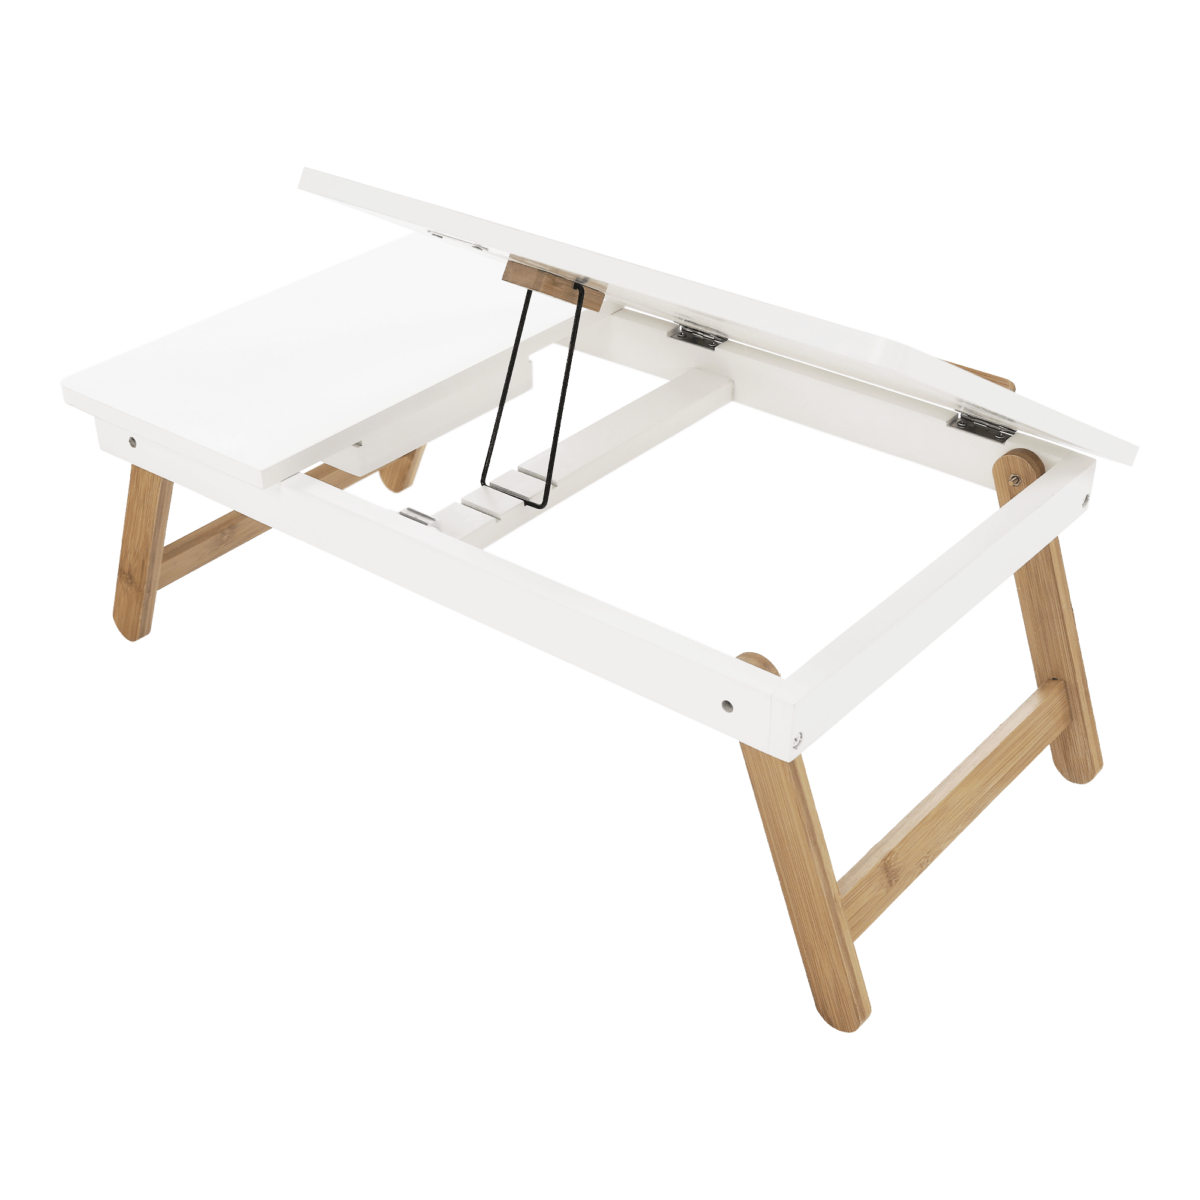 Notebook asztal/táblagép tartó, fehér/természetes bambusz, MELTEN